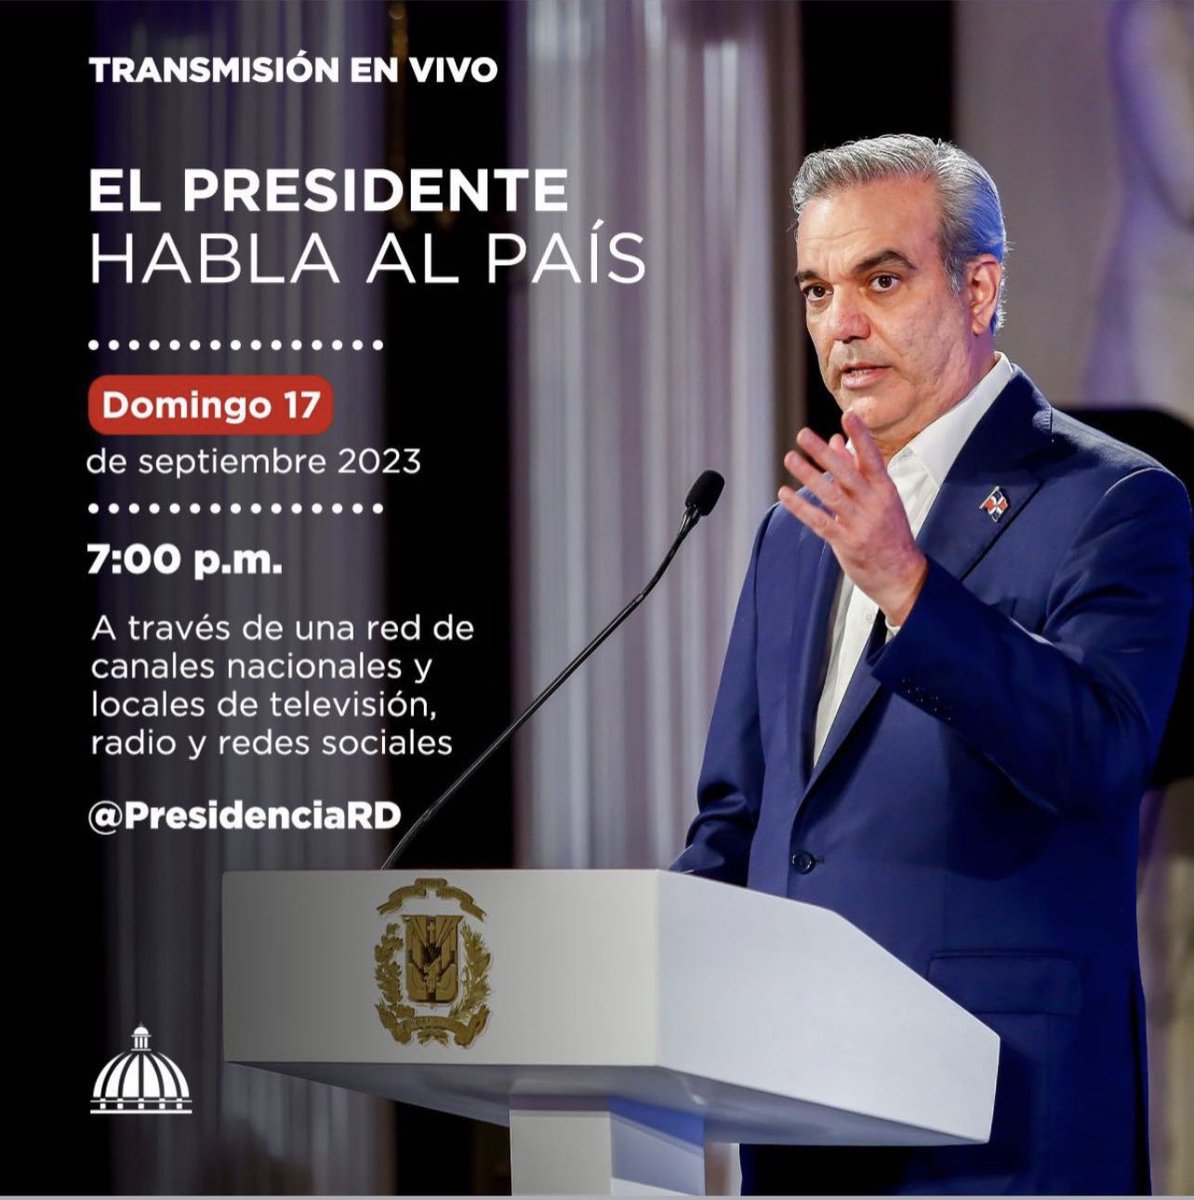 El Presidente Luis Abinader hablará al país hoy, a las 7Pm.